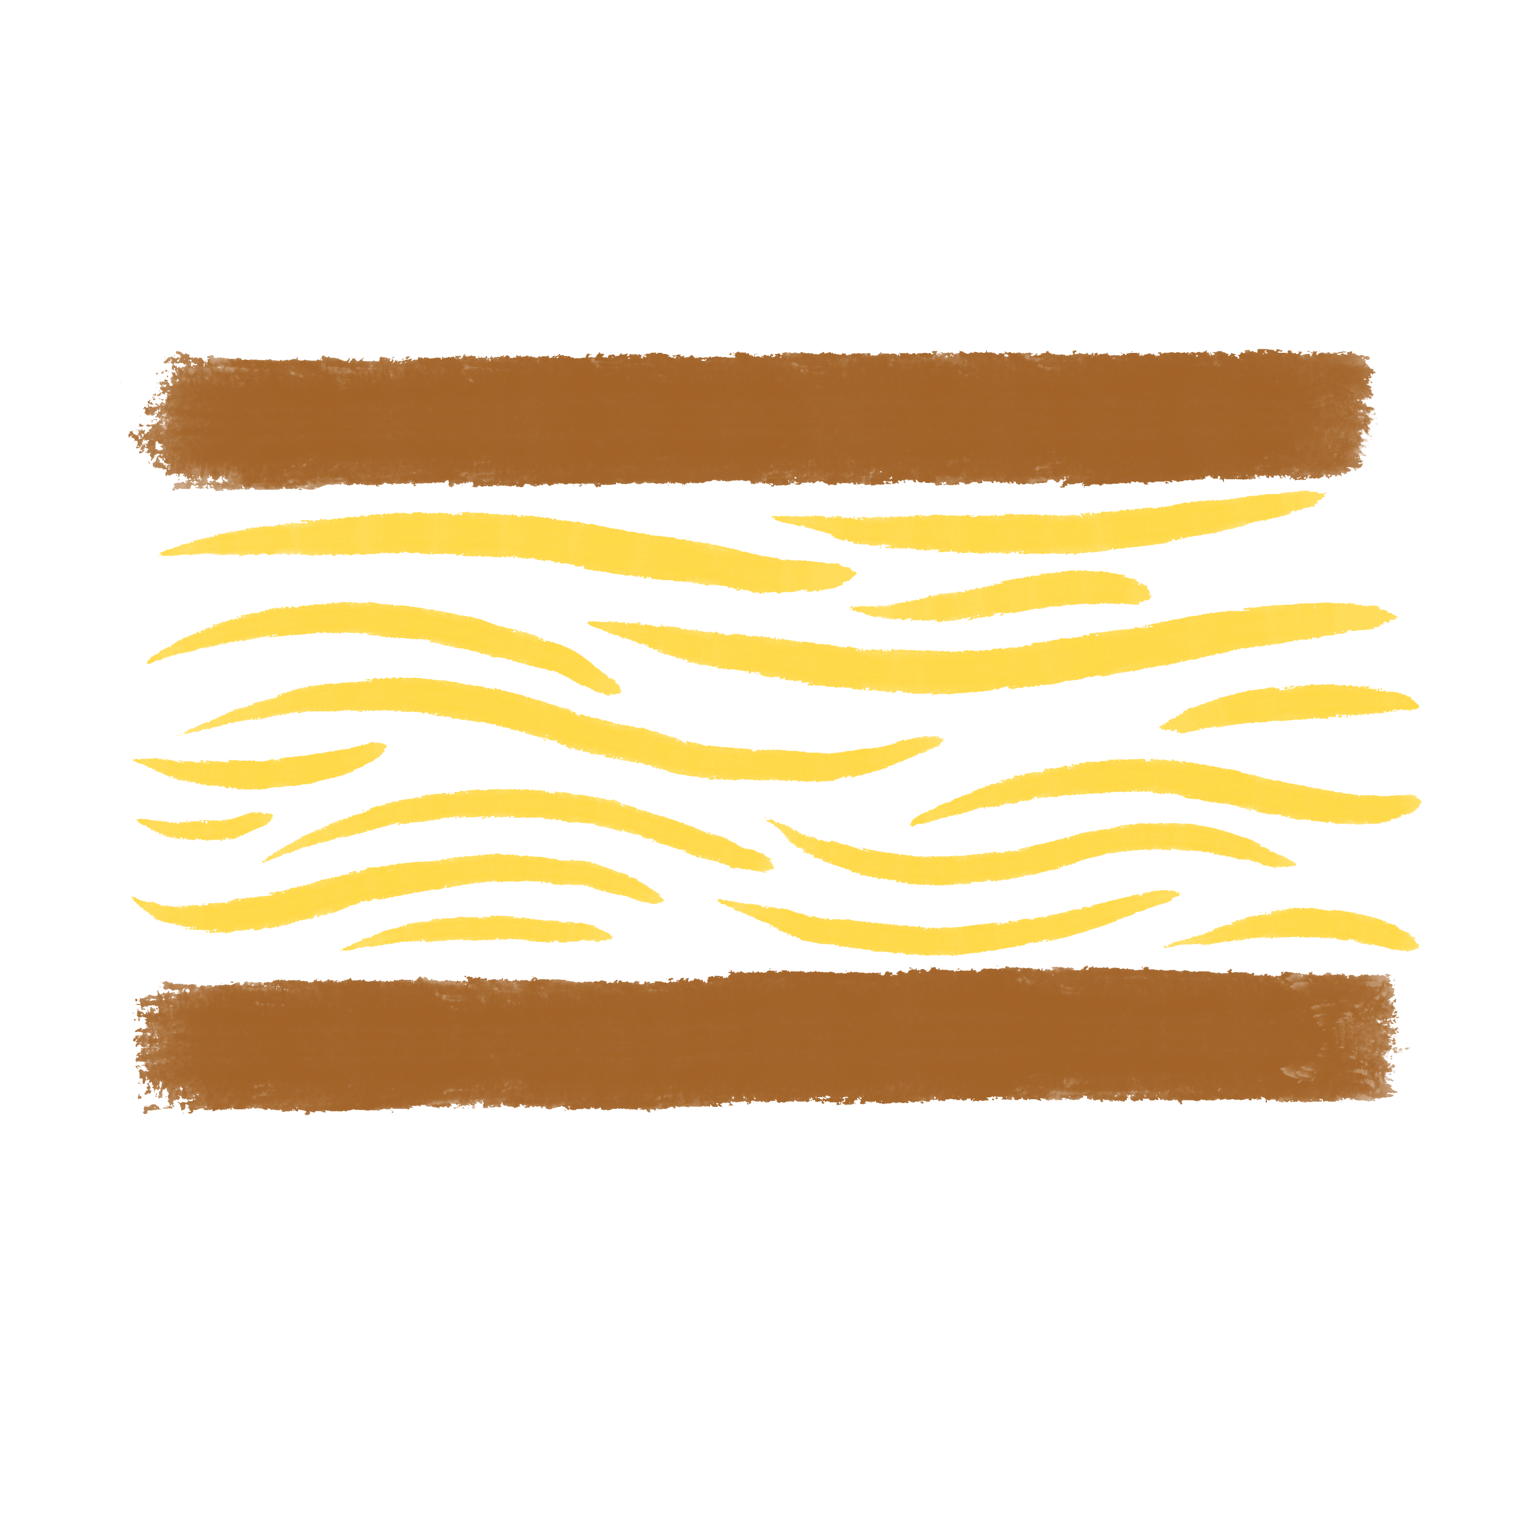 Brushstroke style side view of a brown crisp sandwich